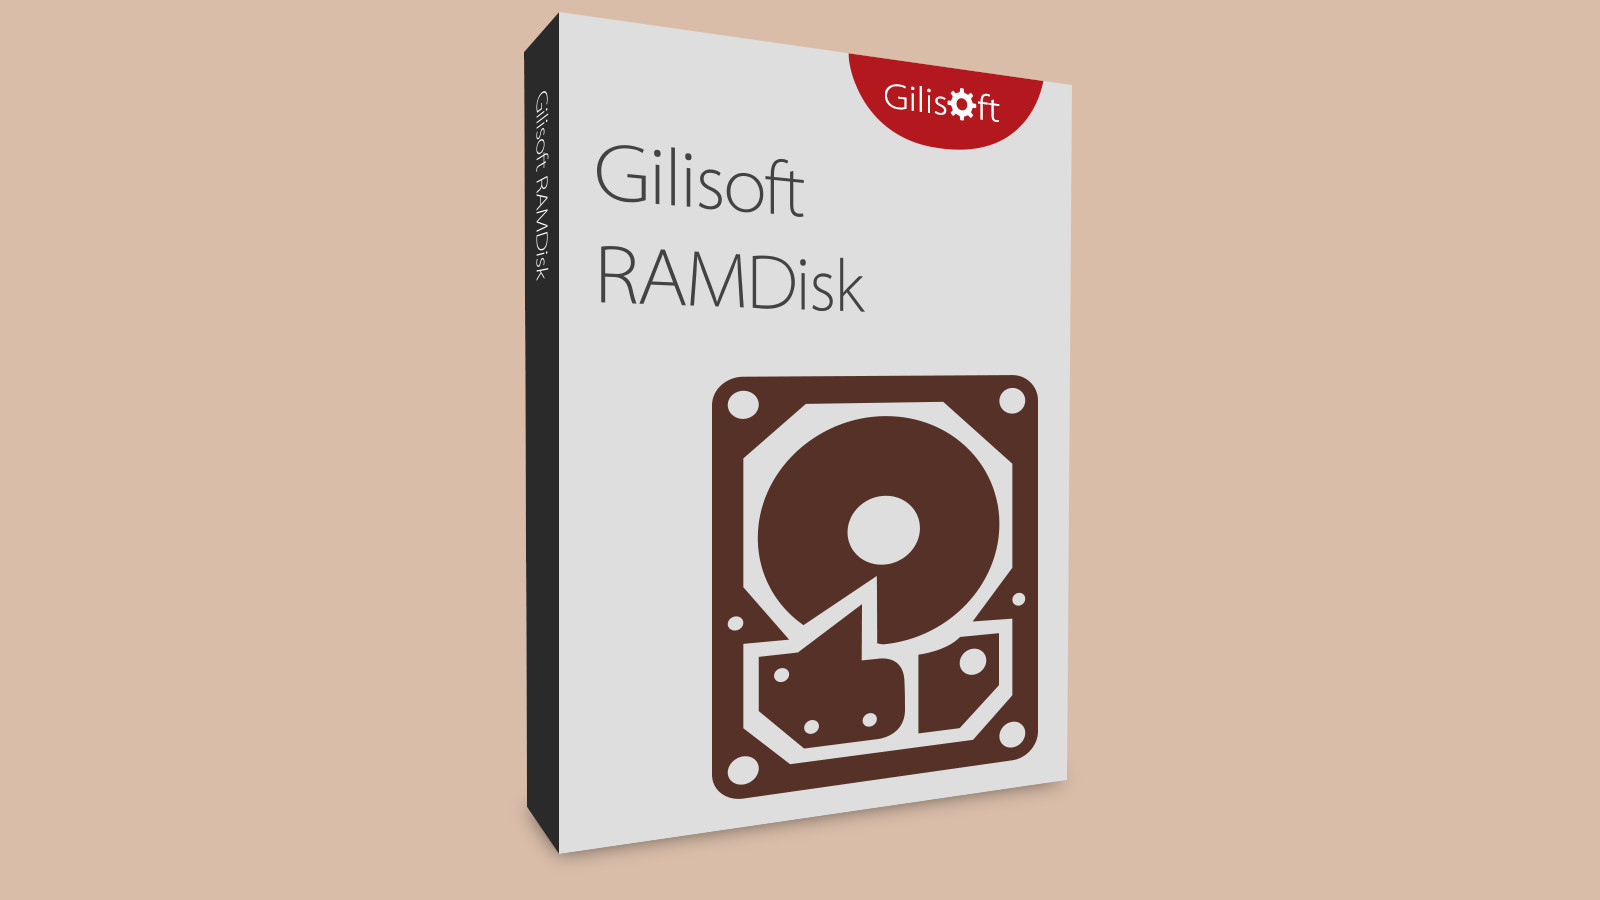 Gilisoft RAMDisk CD Key [$ 15.54]